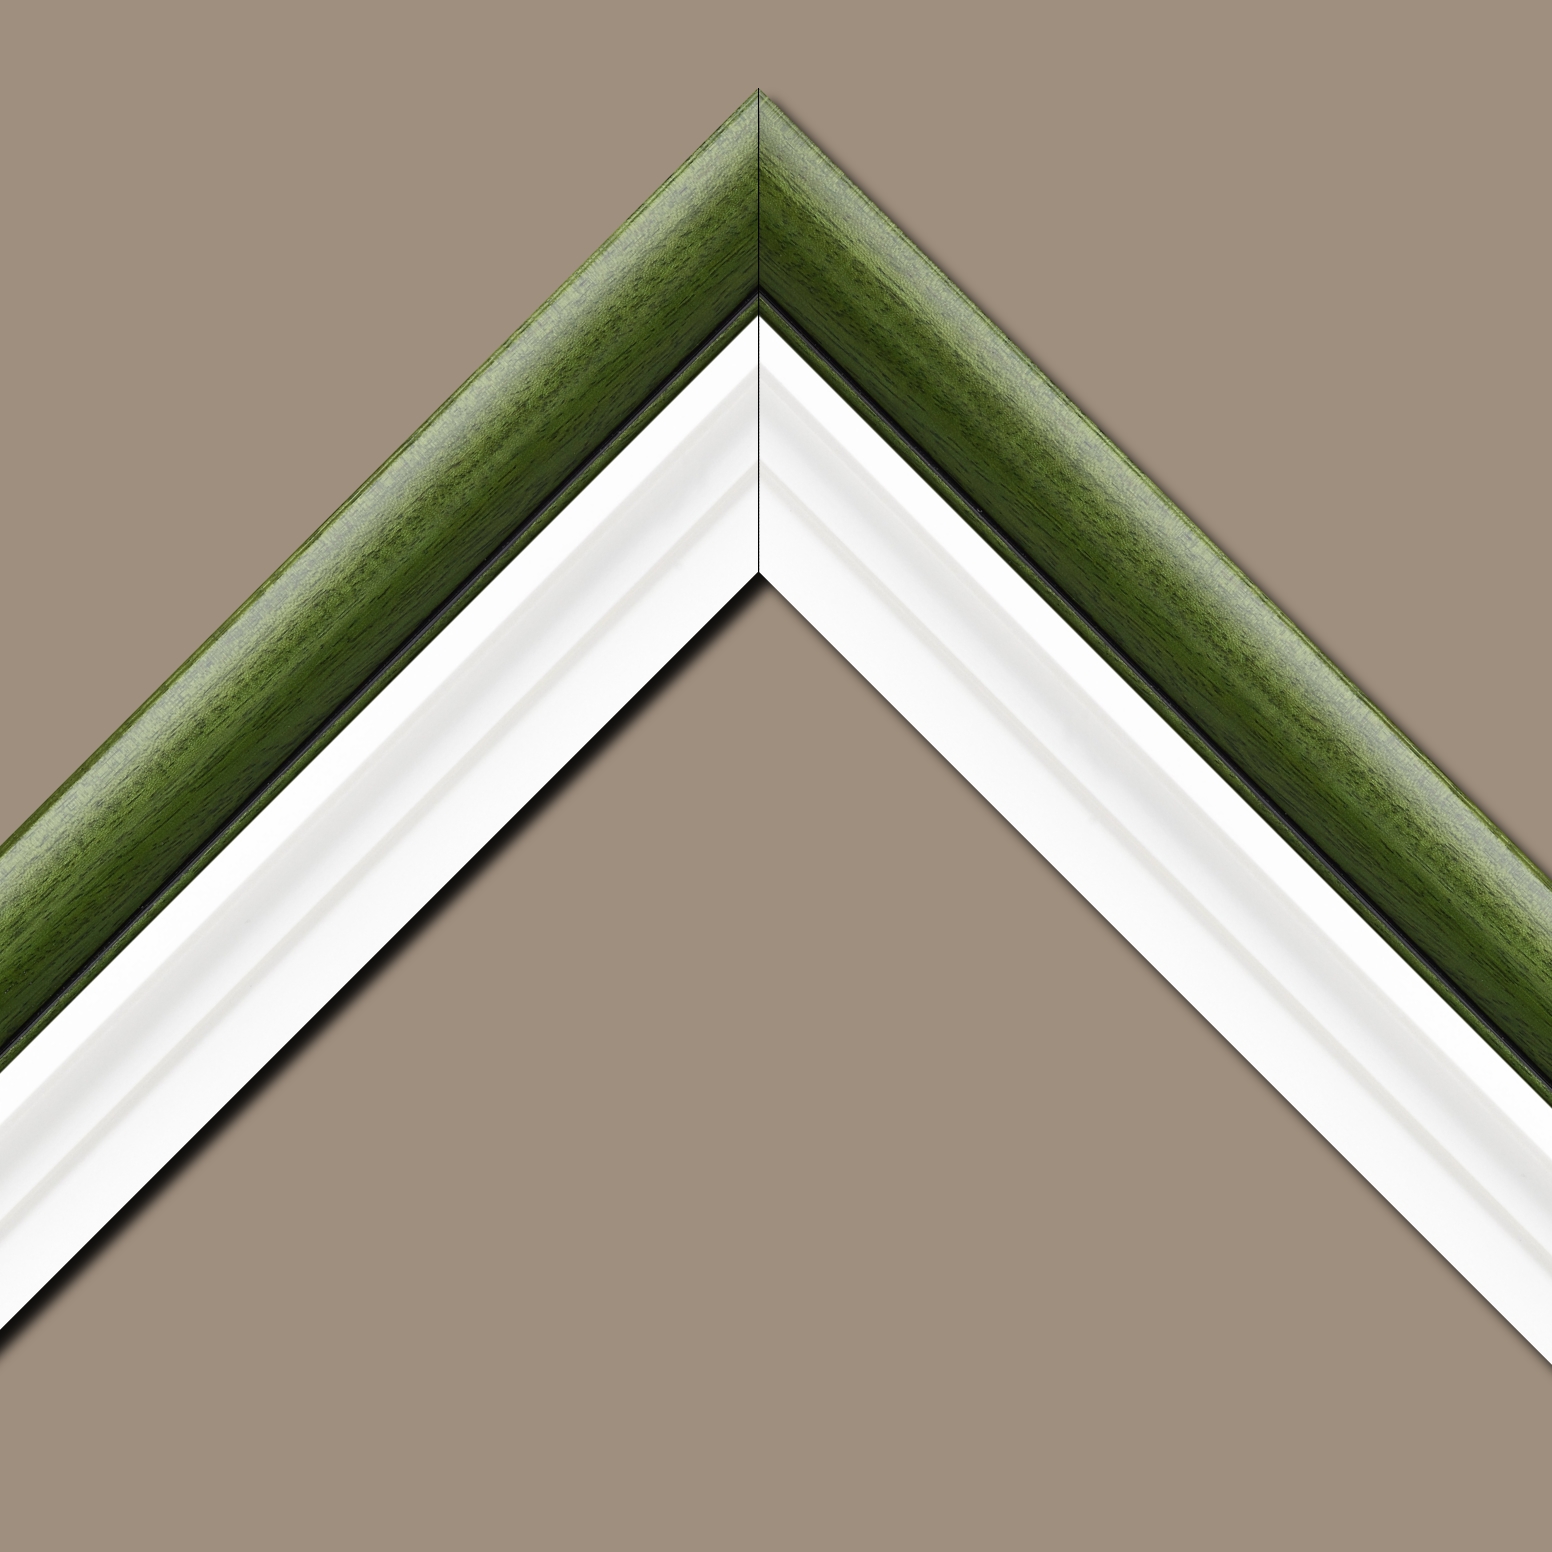 Caisse américaine pour peintures  americaine bois blanc vert — 80 x 80